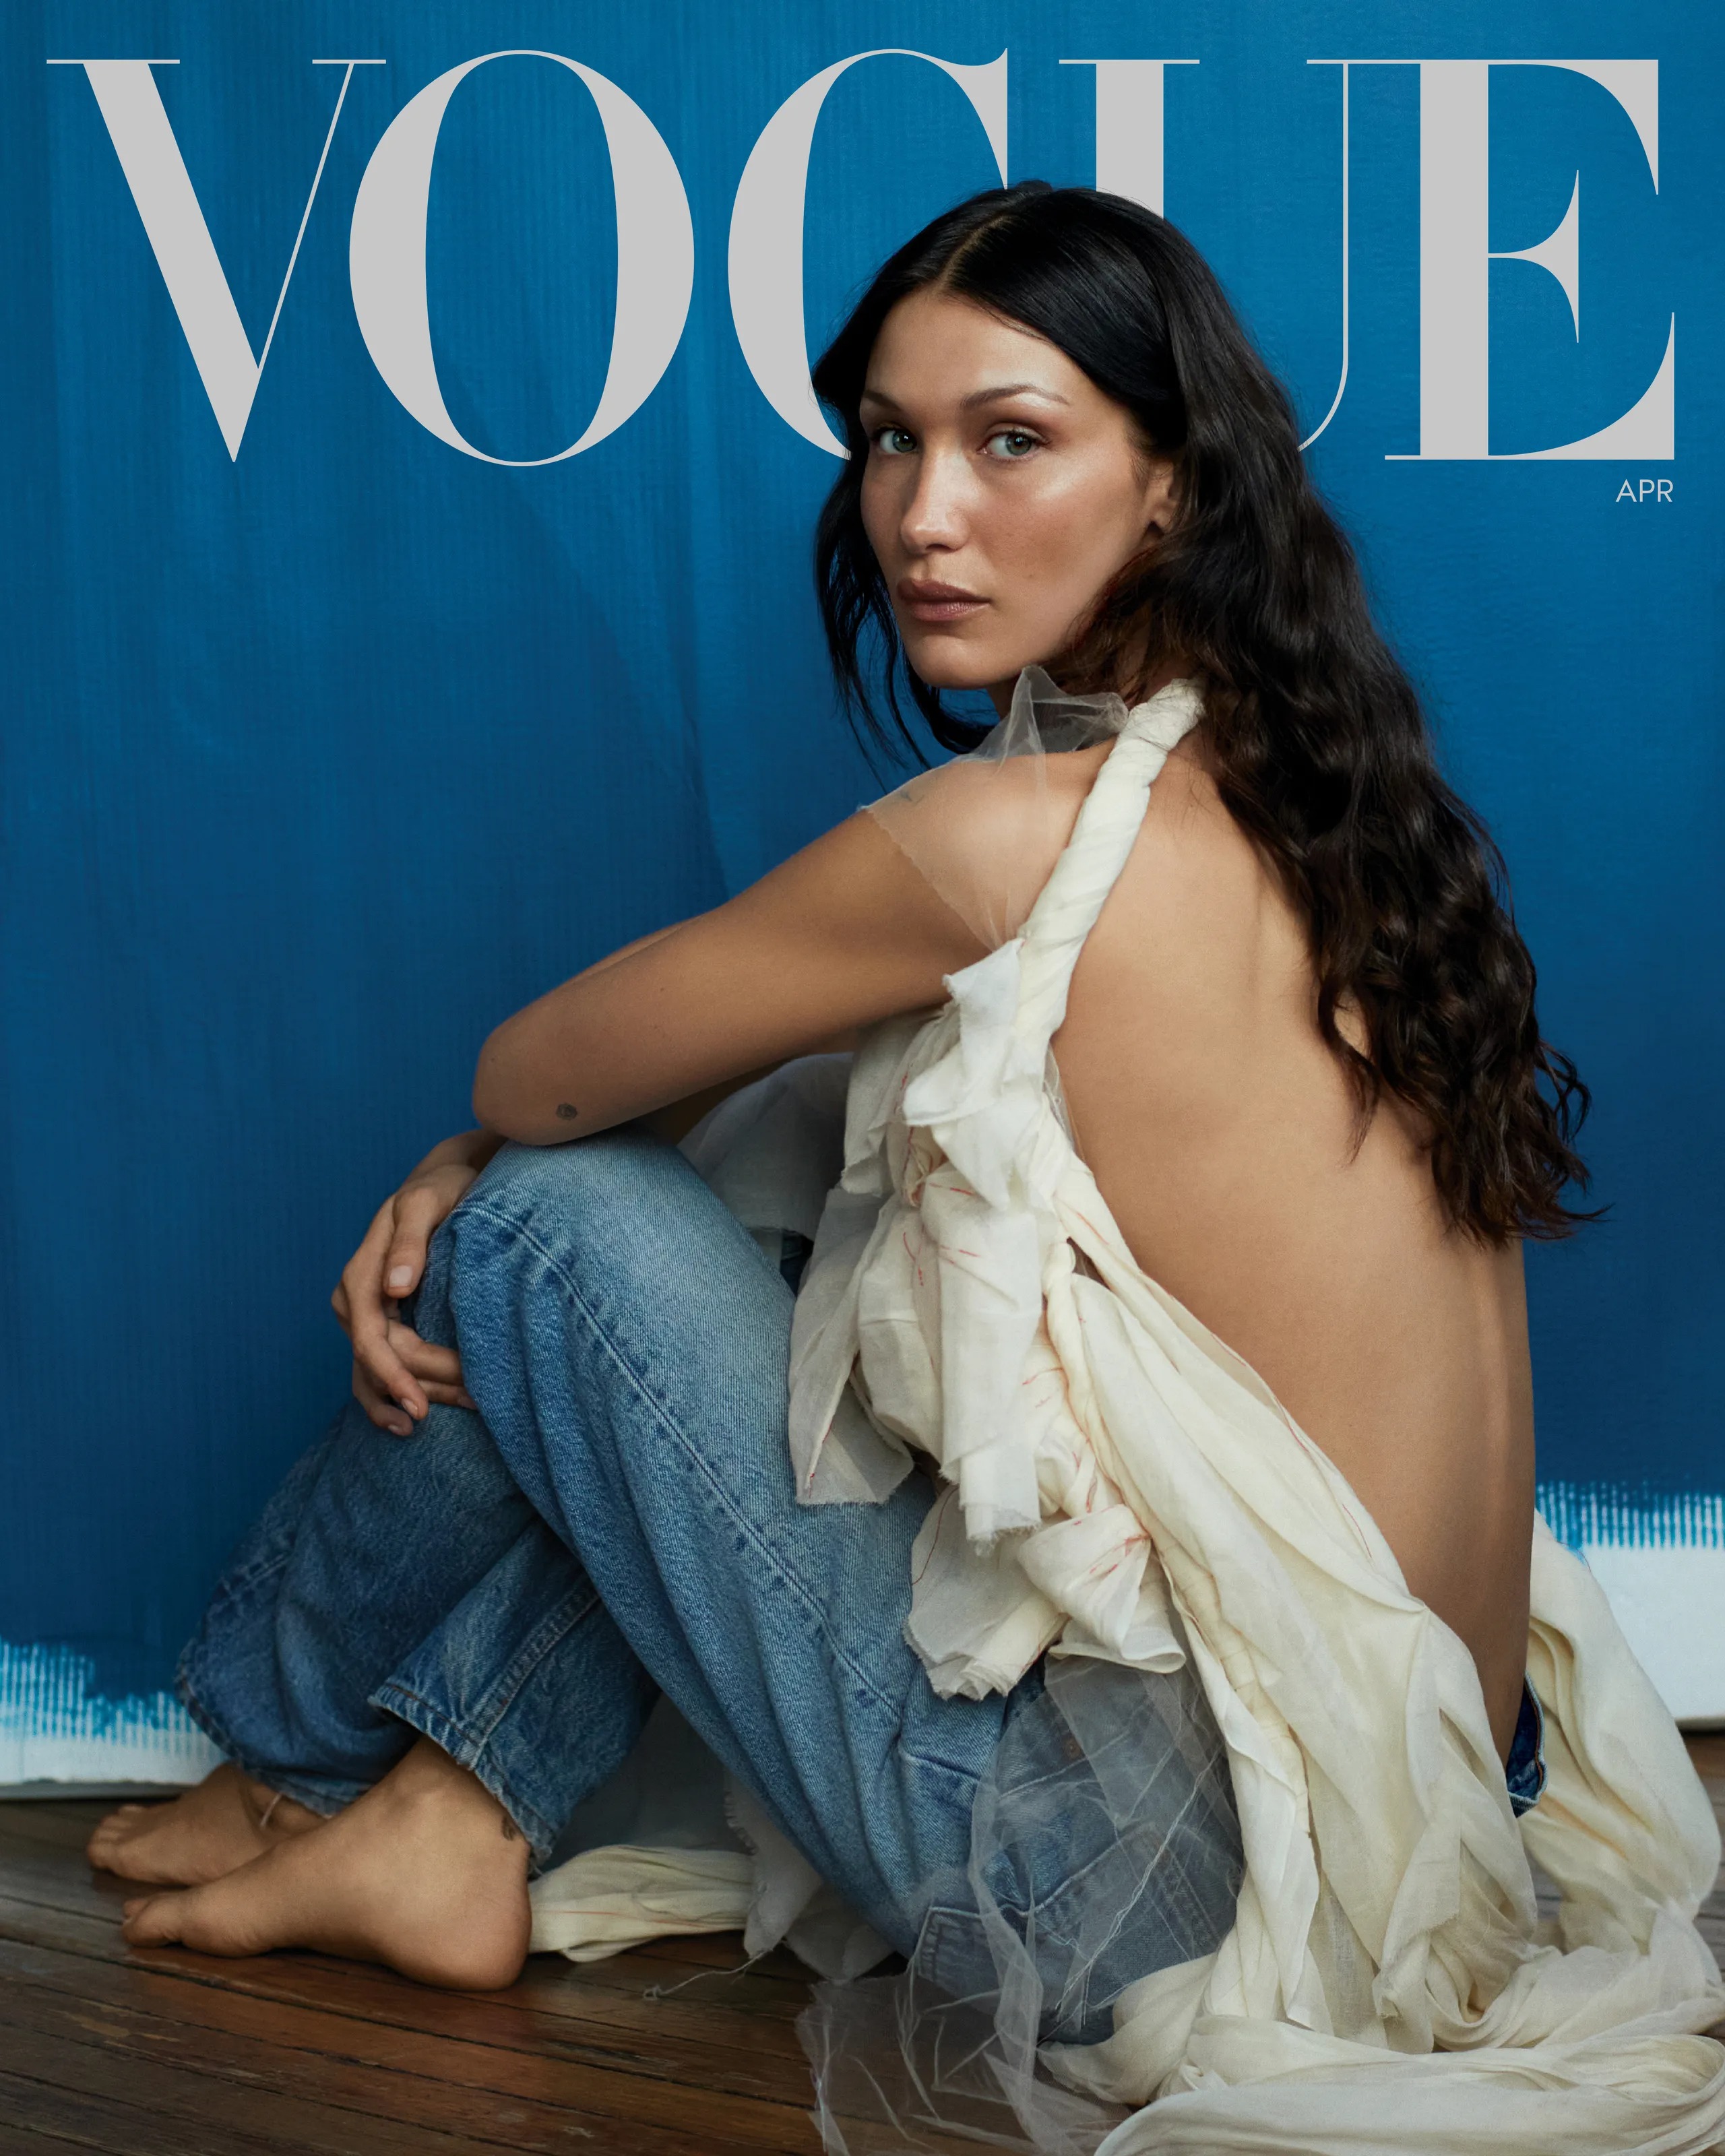 Vogue công bố Bella Hadid là ngôi sao trang bìa tháng 4/2022. Trong cuộc phỏng vấn, nữ người mở ...